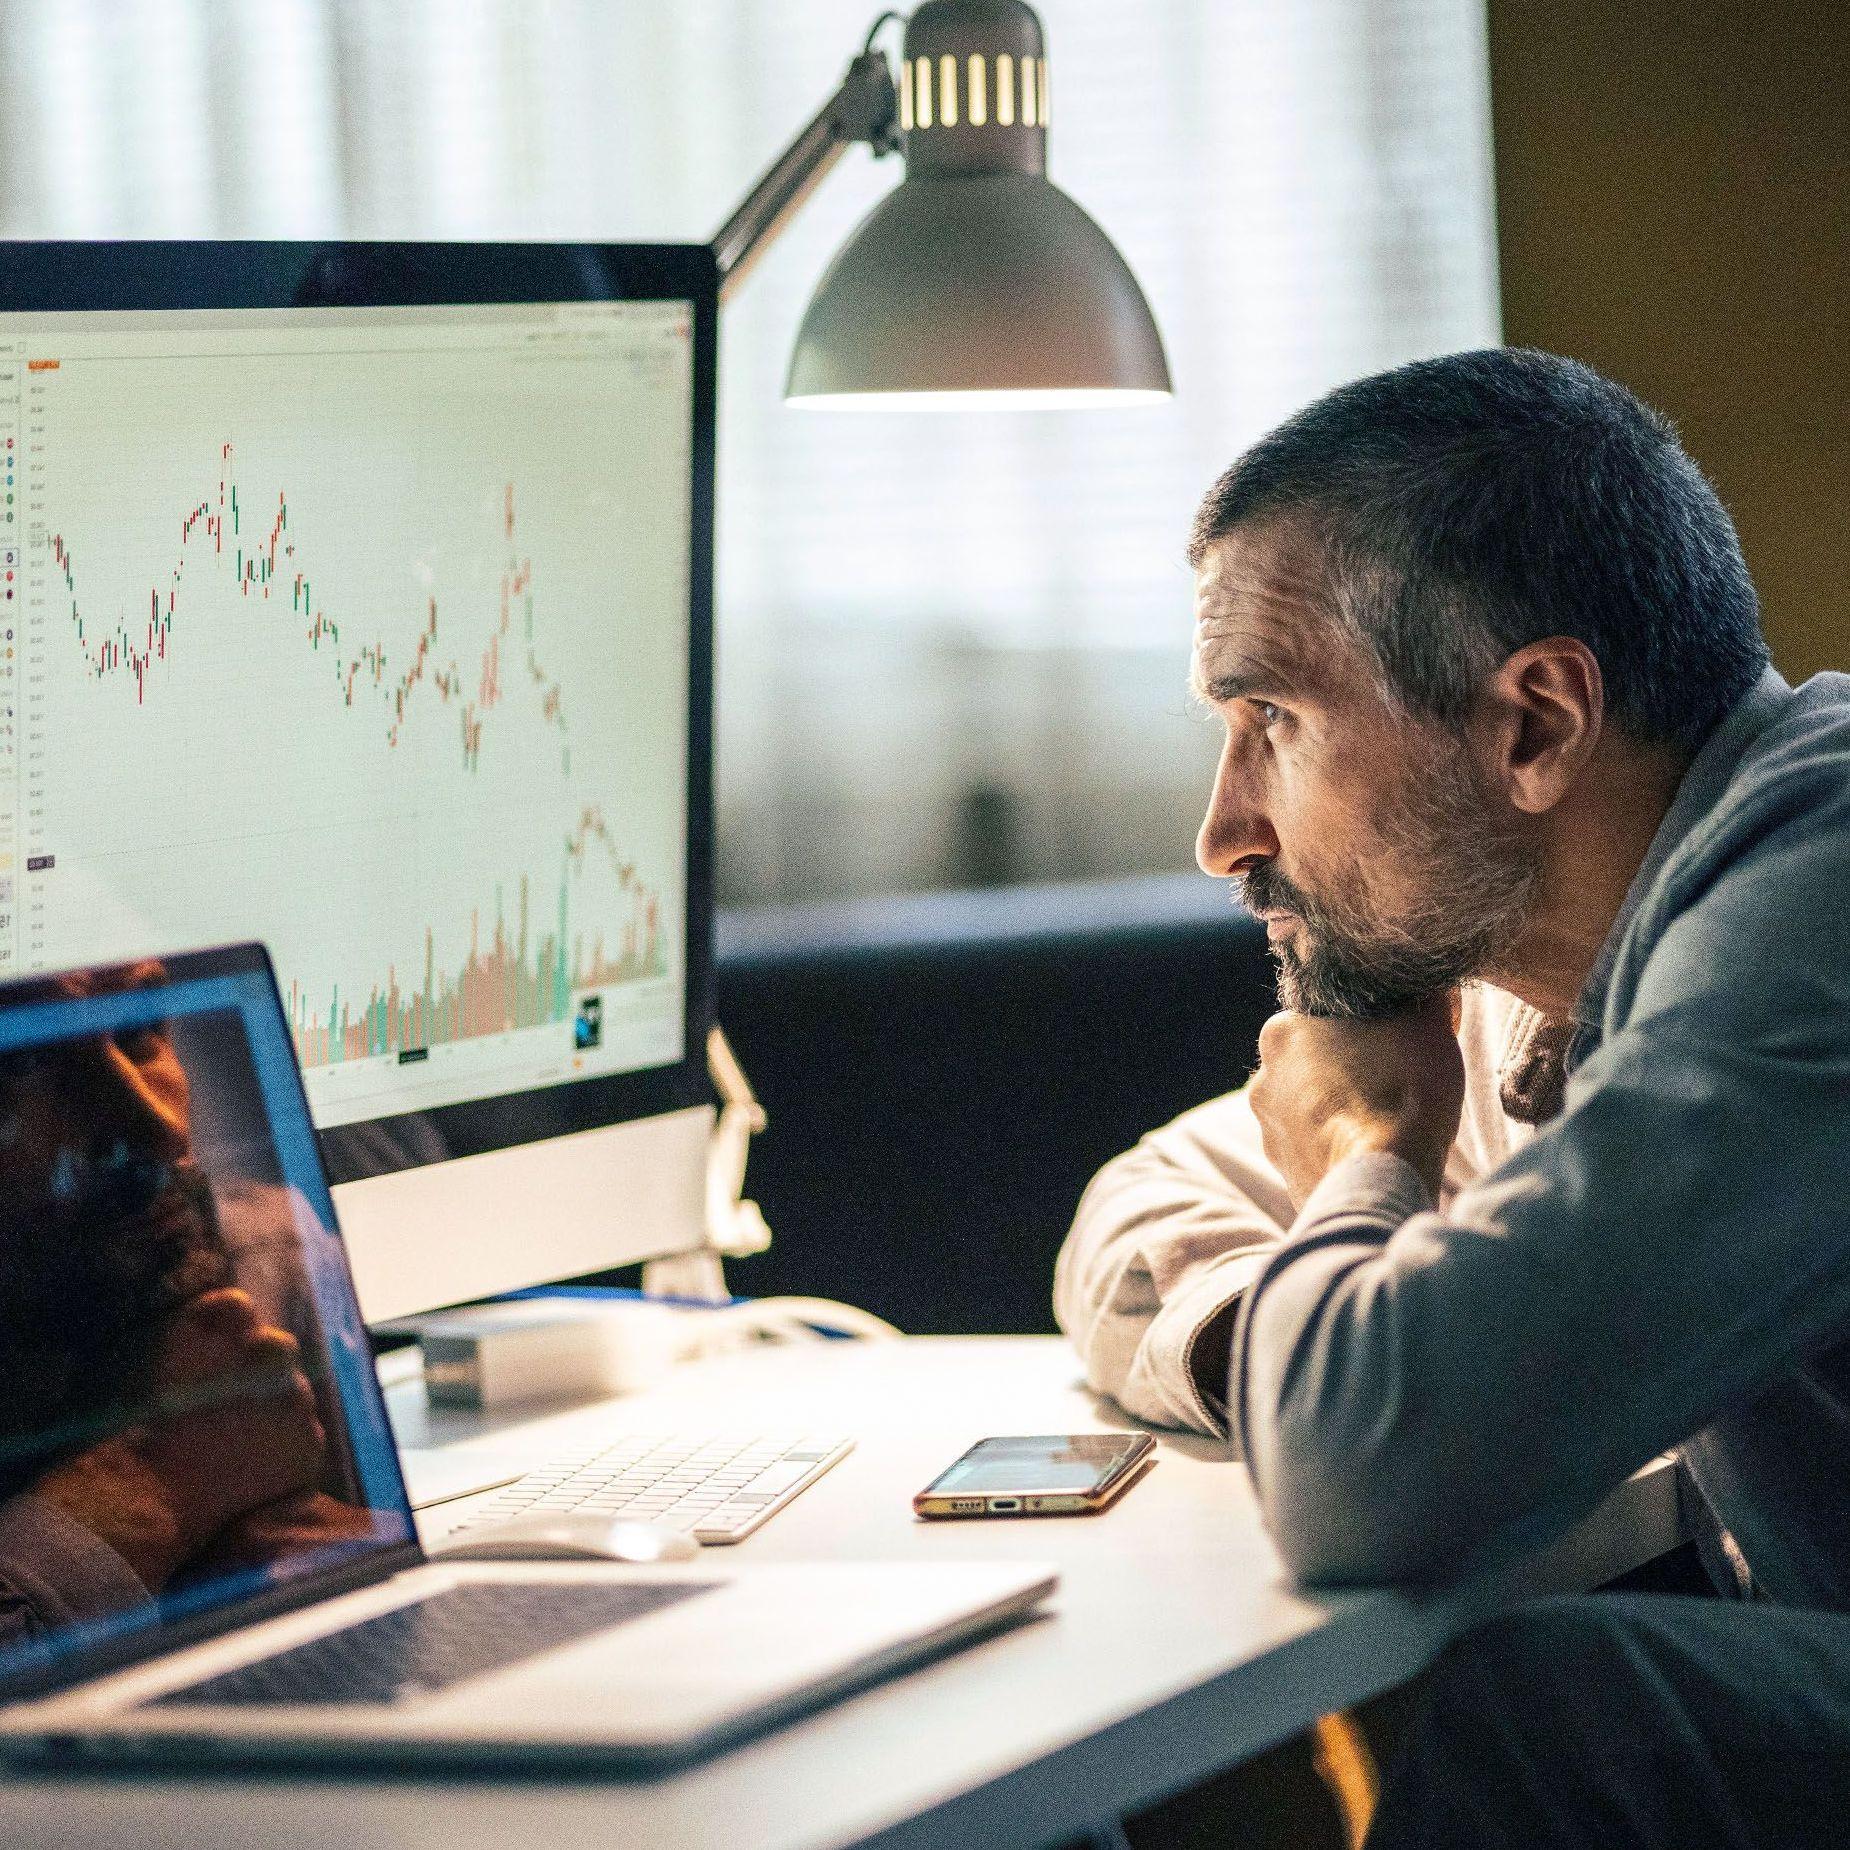 Ein Mann mittleren Alters schaut ernsthaft, konzentriert, sein Kinn auf seine Hände gestützt, auf die Aktienkurven mehrerer Bildschirme auf dem Schreibtisch vor ihm. 